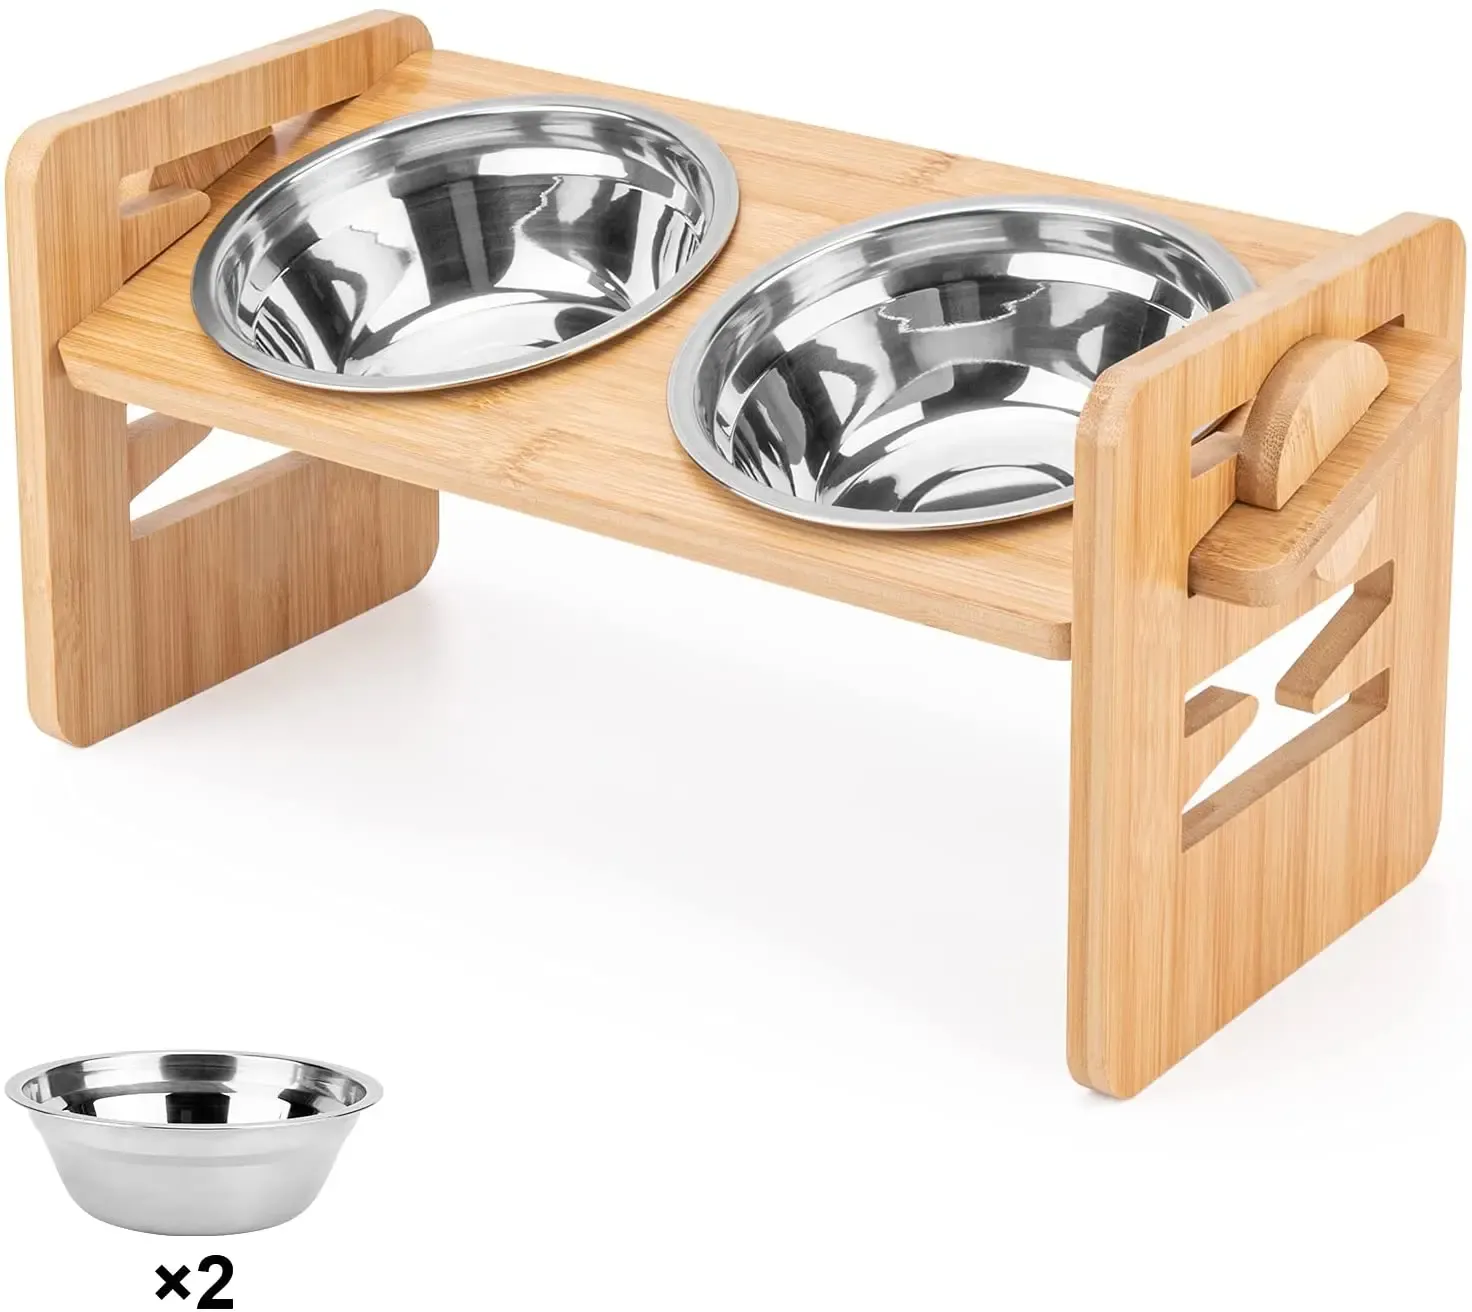 Mangkuk makan anjing, bahan kayu bambu mewah yang dapat disesuaikan mangkuk makan anjing peliharaan ditinggikan dengan 2 mangkuk baja tahan karat